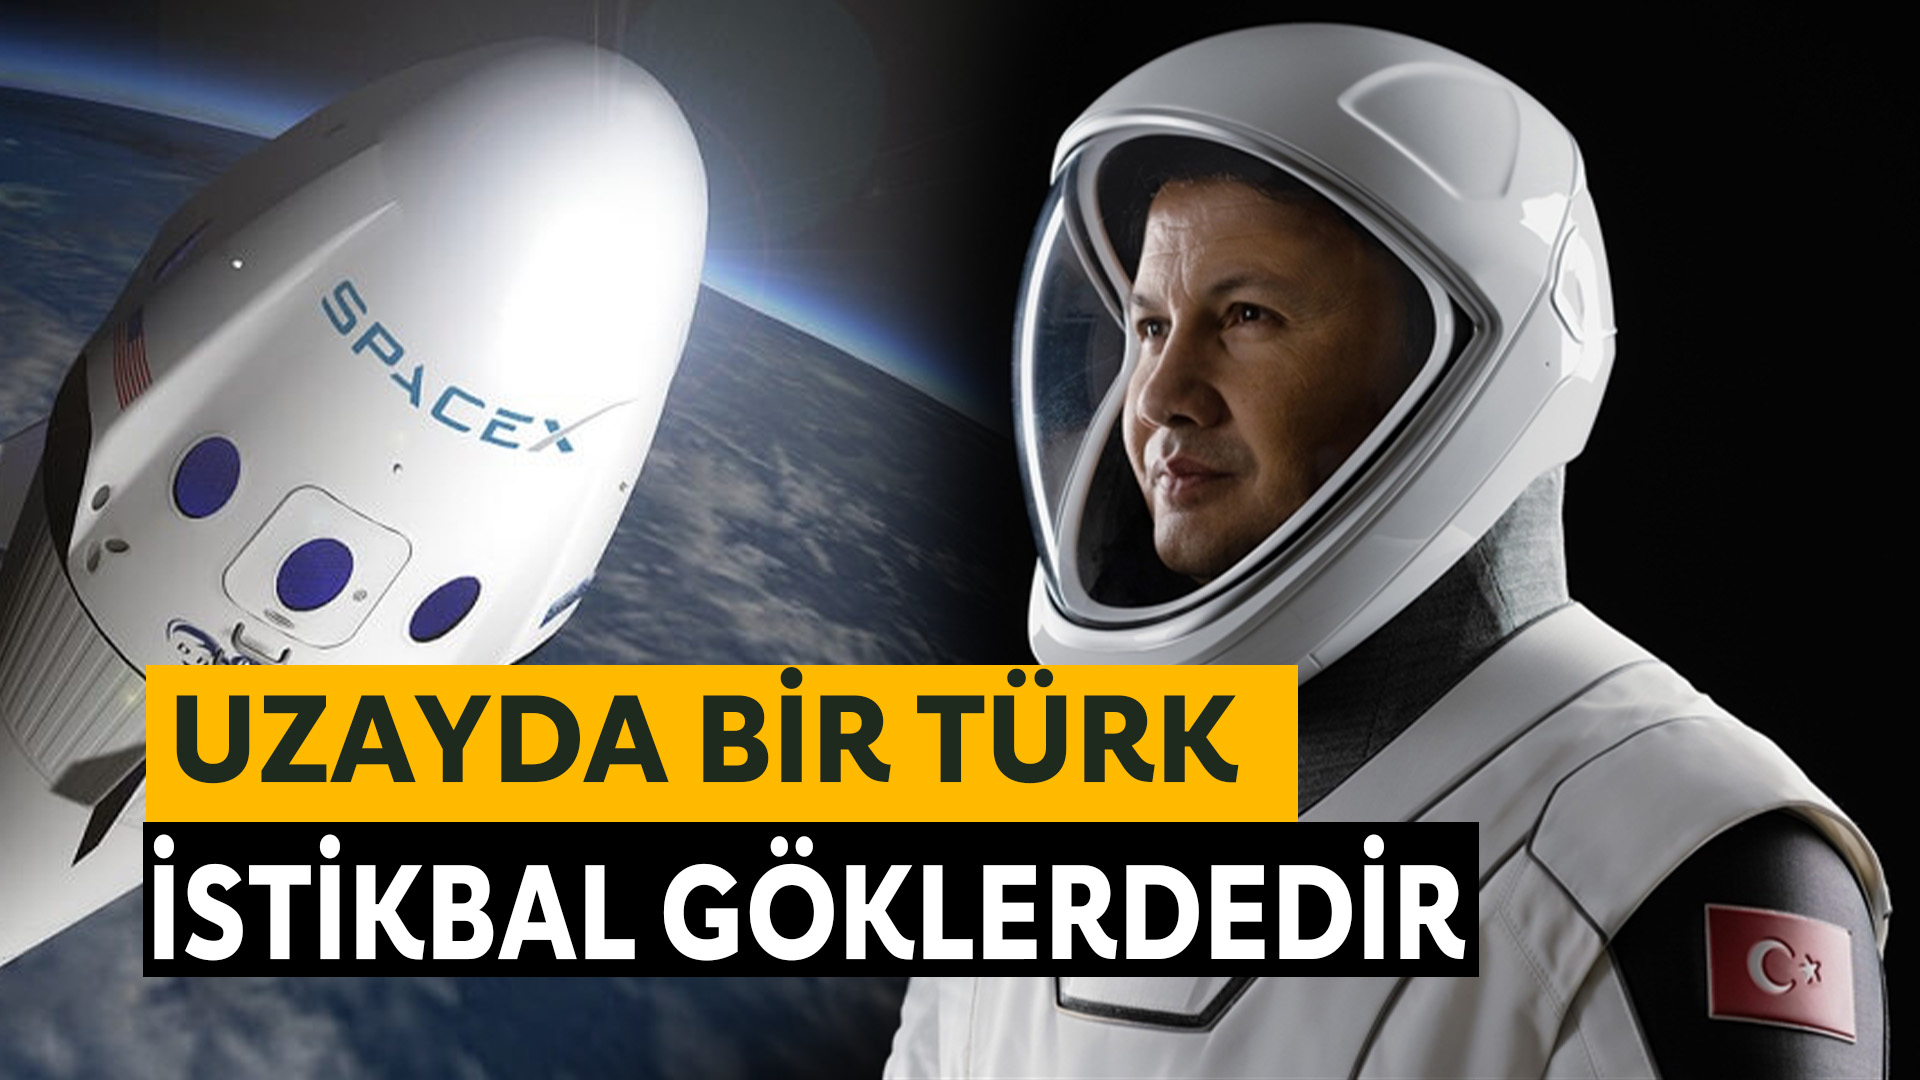 İlk Türk Astronot Alper Gezeravcı, Uzayda “Tarih Yazmaya” Başladı